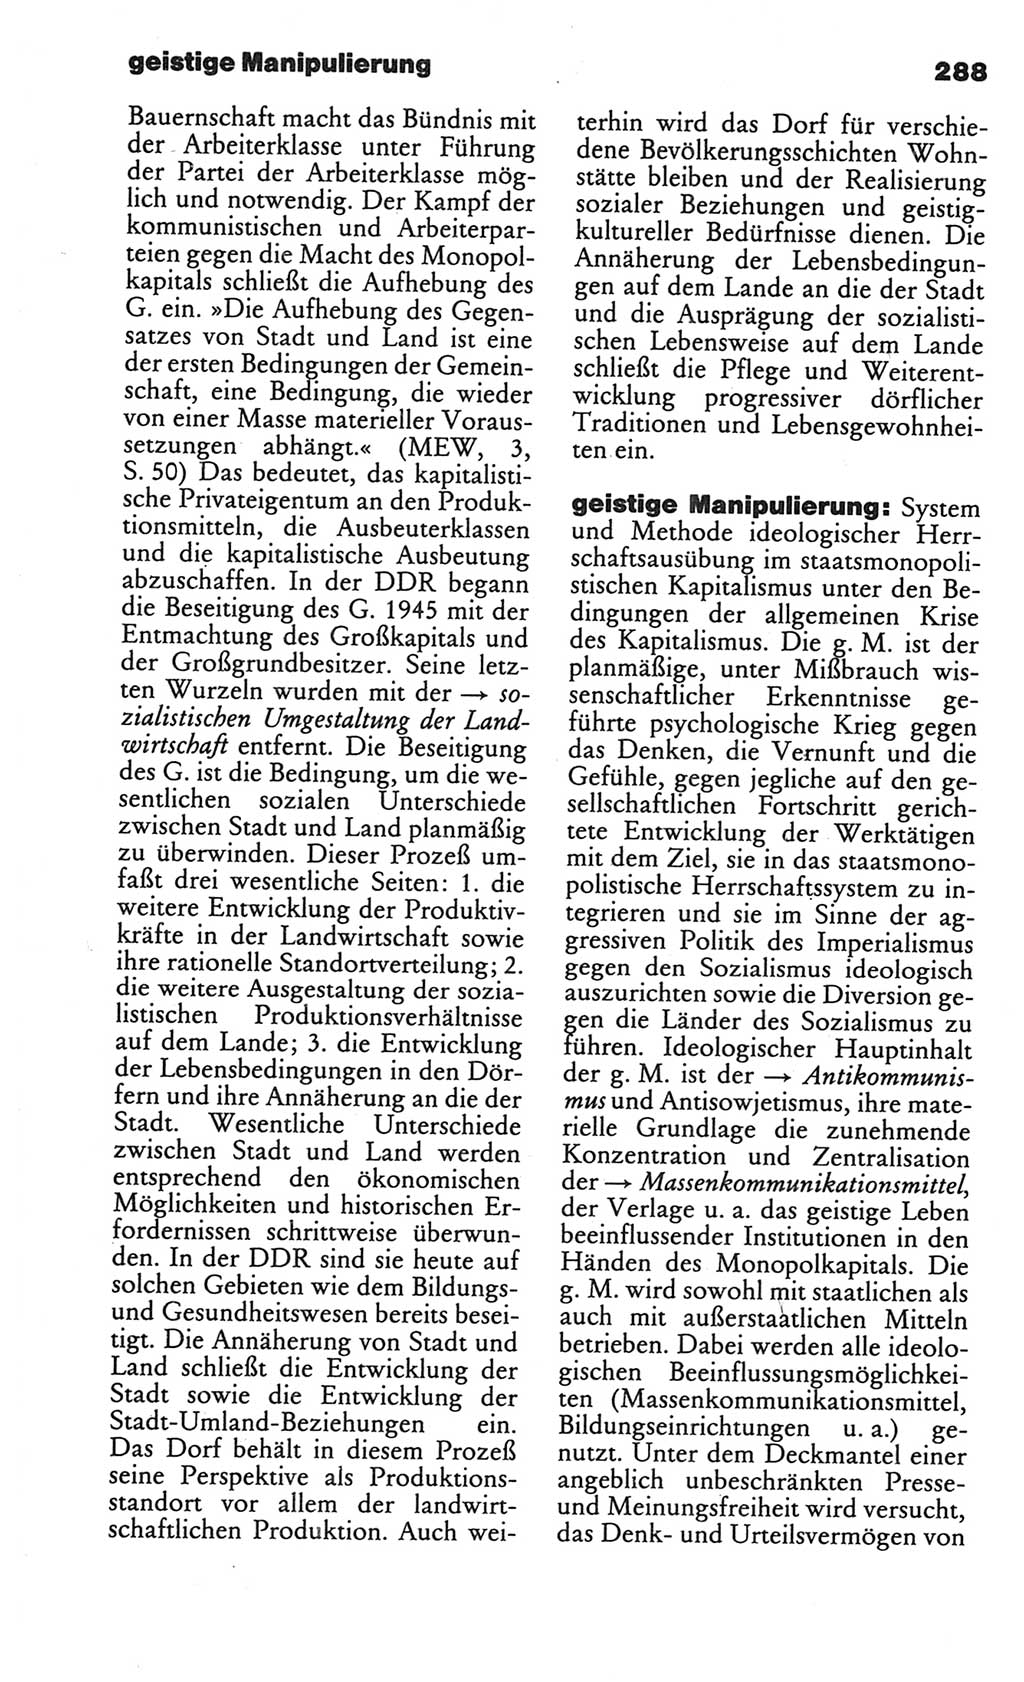 Kleines politisches Wörterbuch [Deutsche Demokratische Republik (DDR)] 1986, Seite 288 (Kl. pol. Wb. DDR 1986, S. 288)